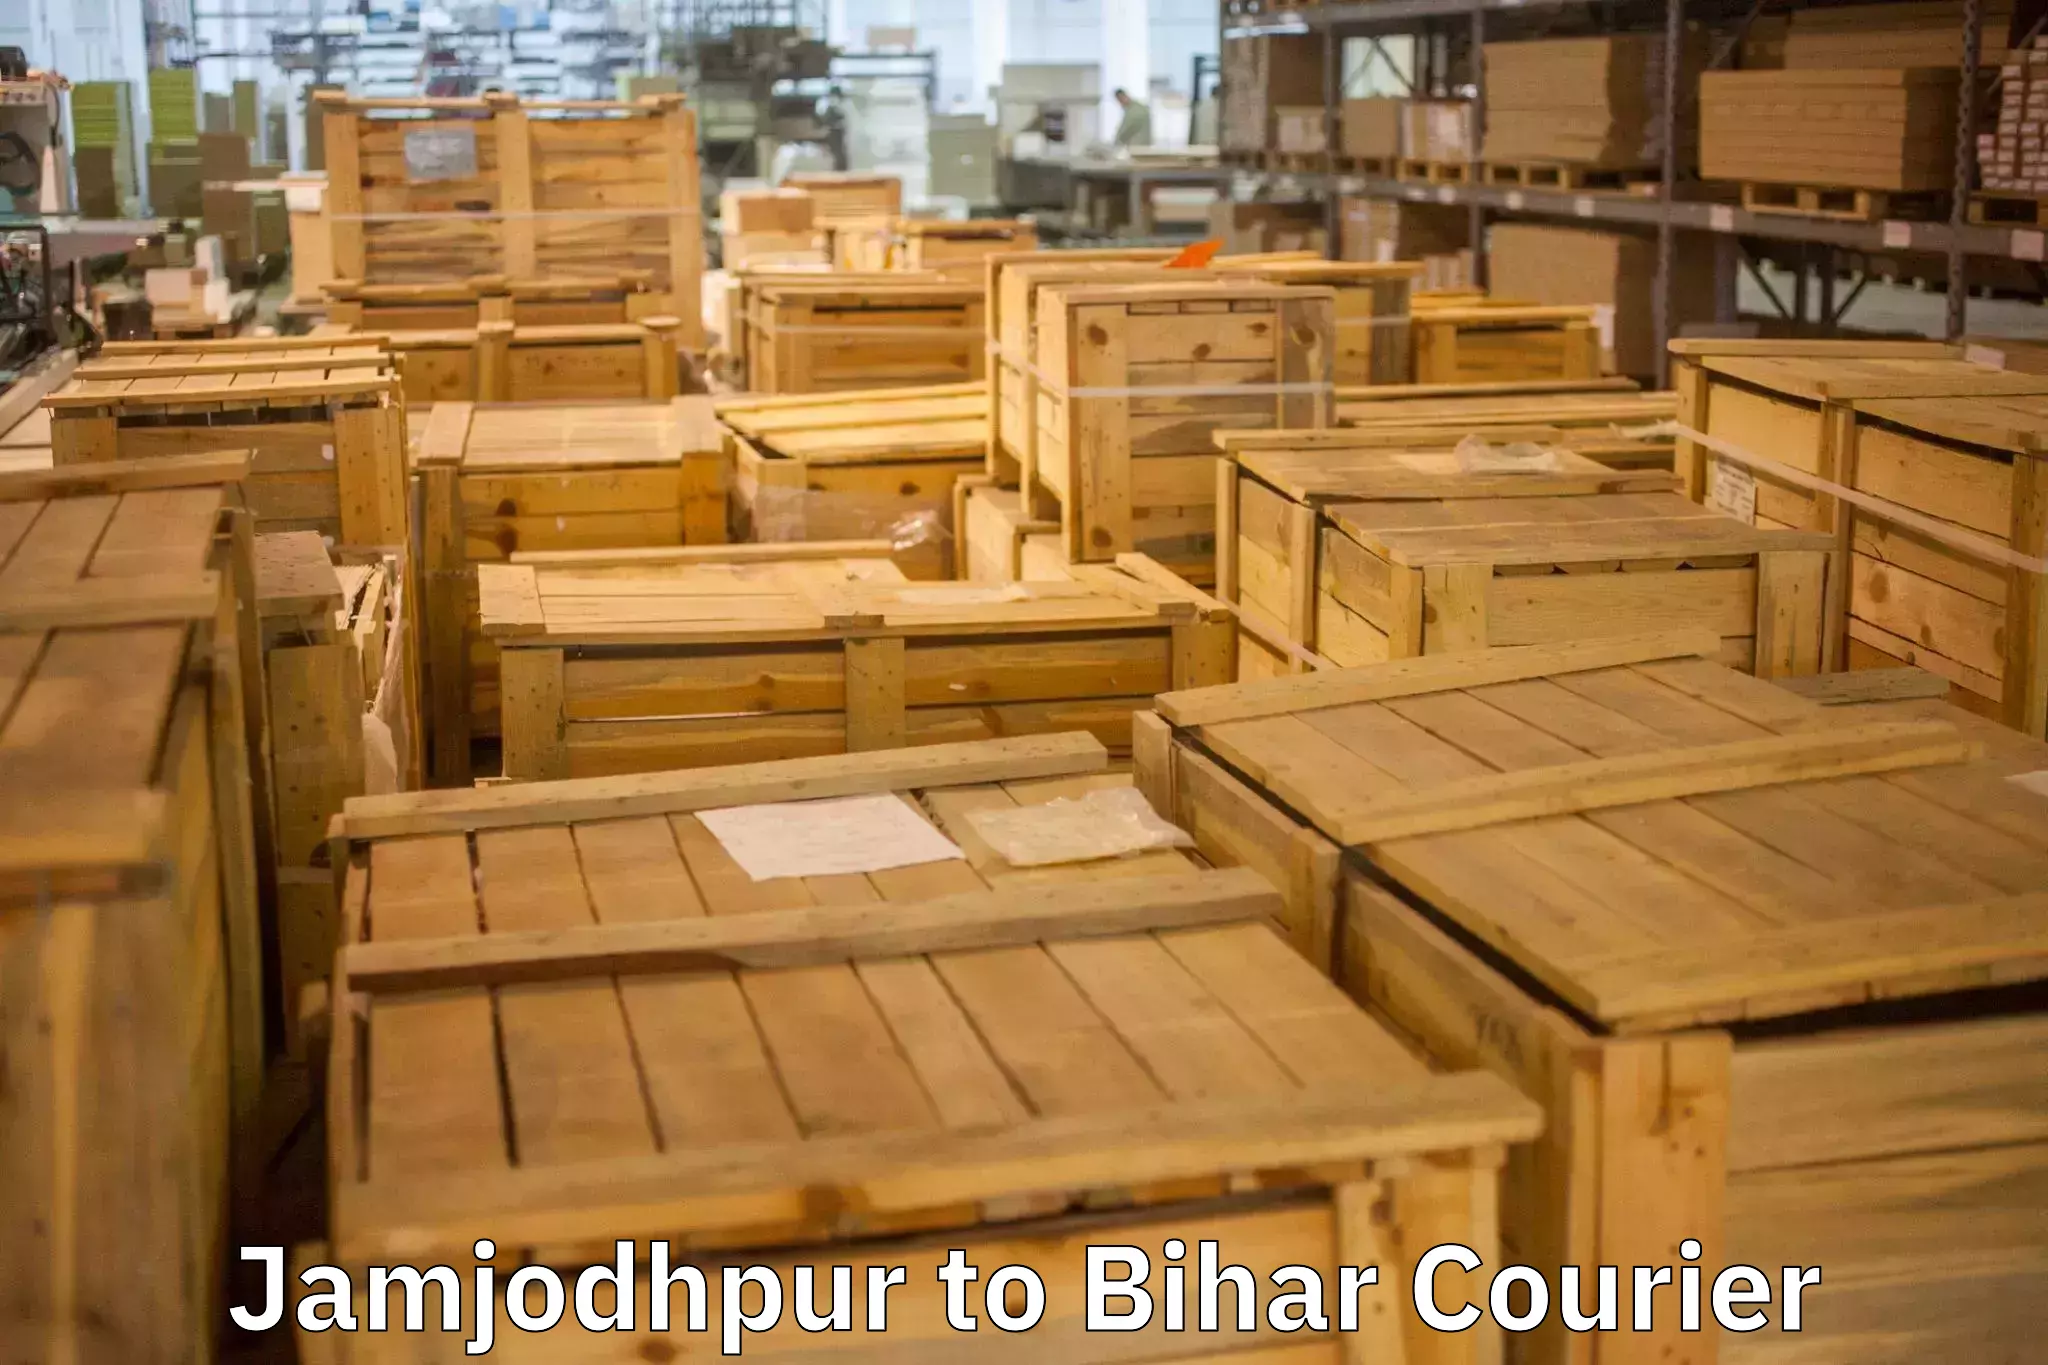 Trusted furniture movers Jamjodhpur to Samastipur